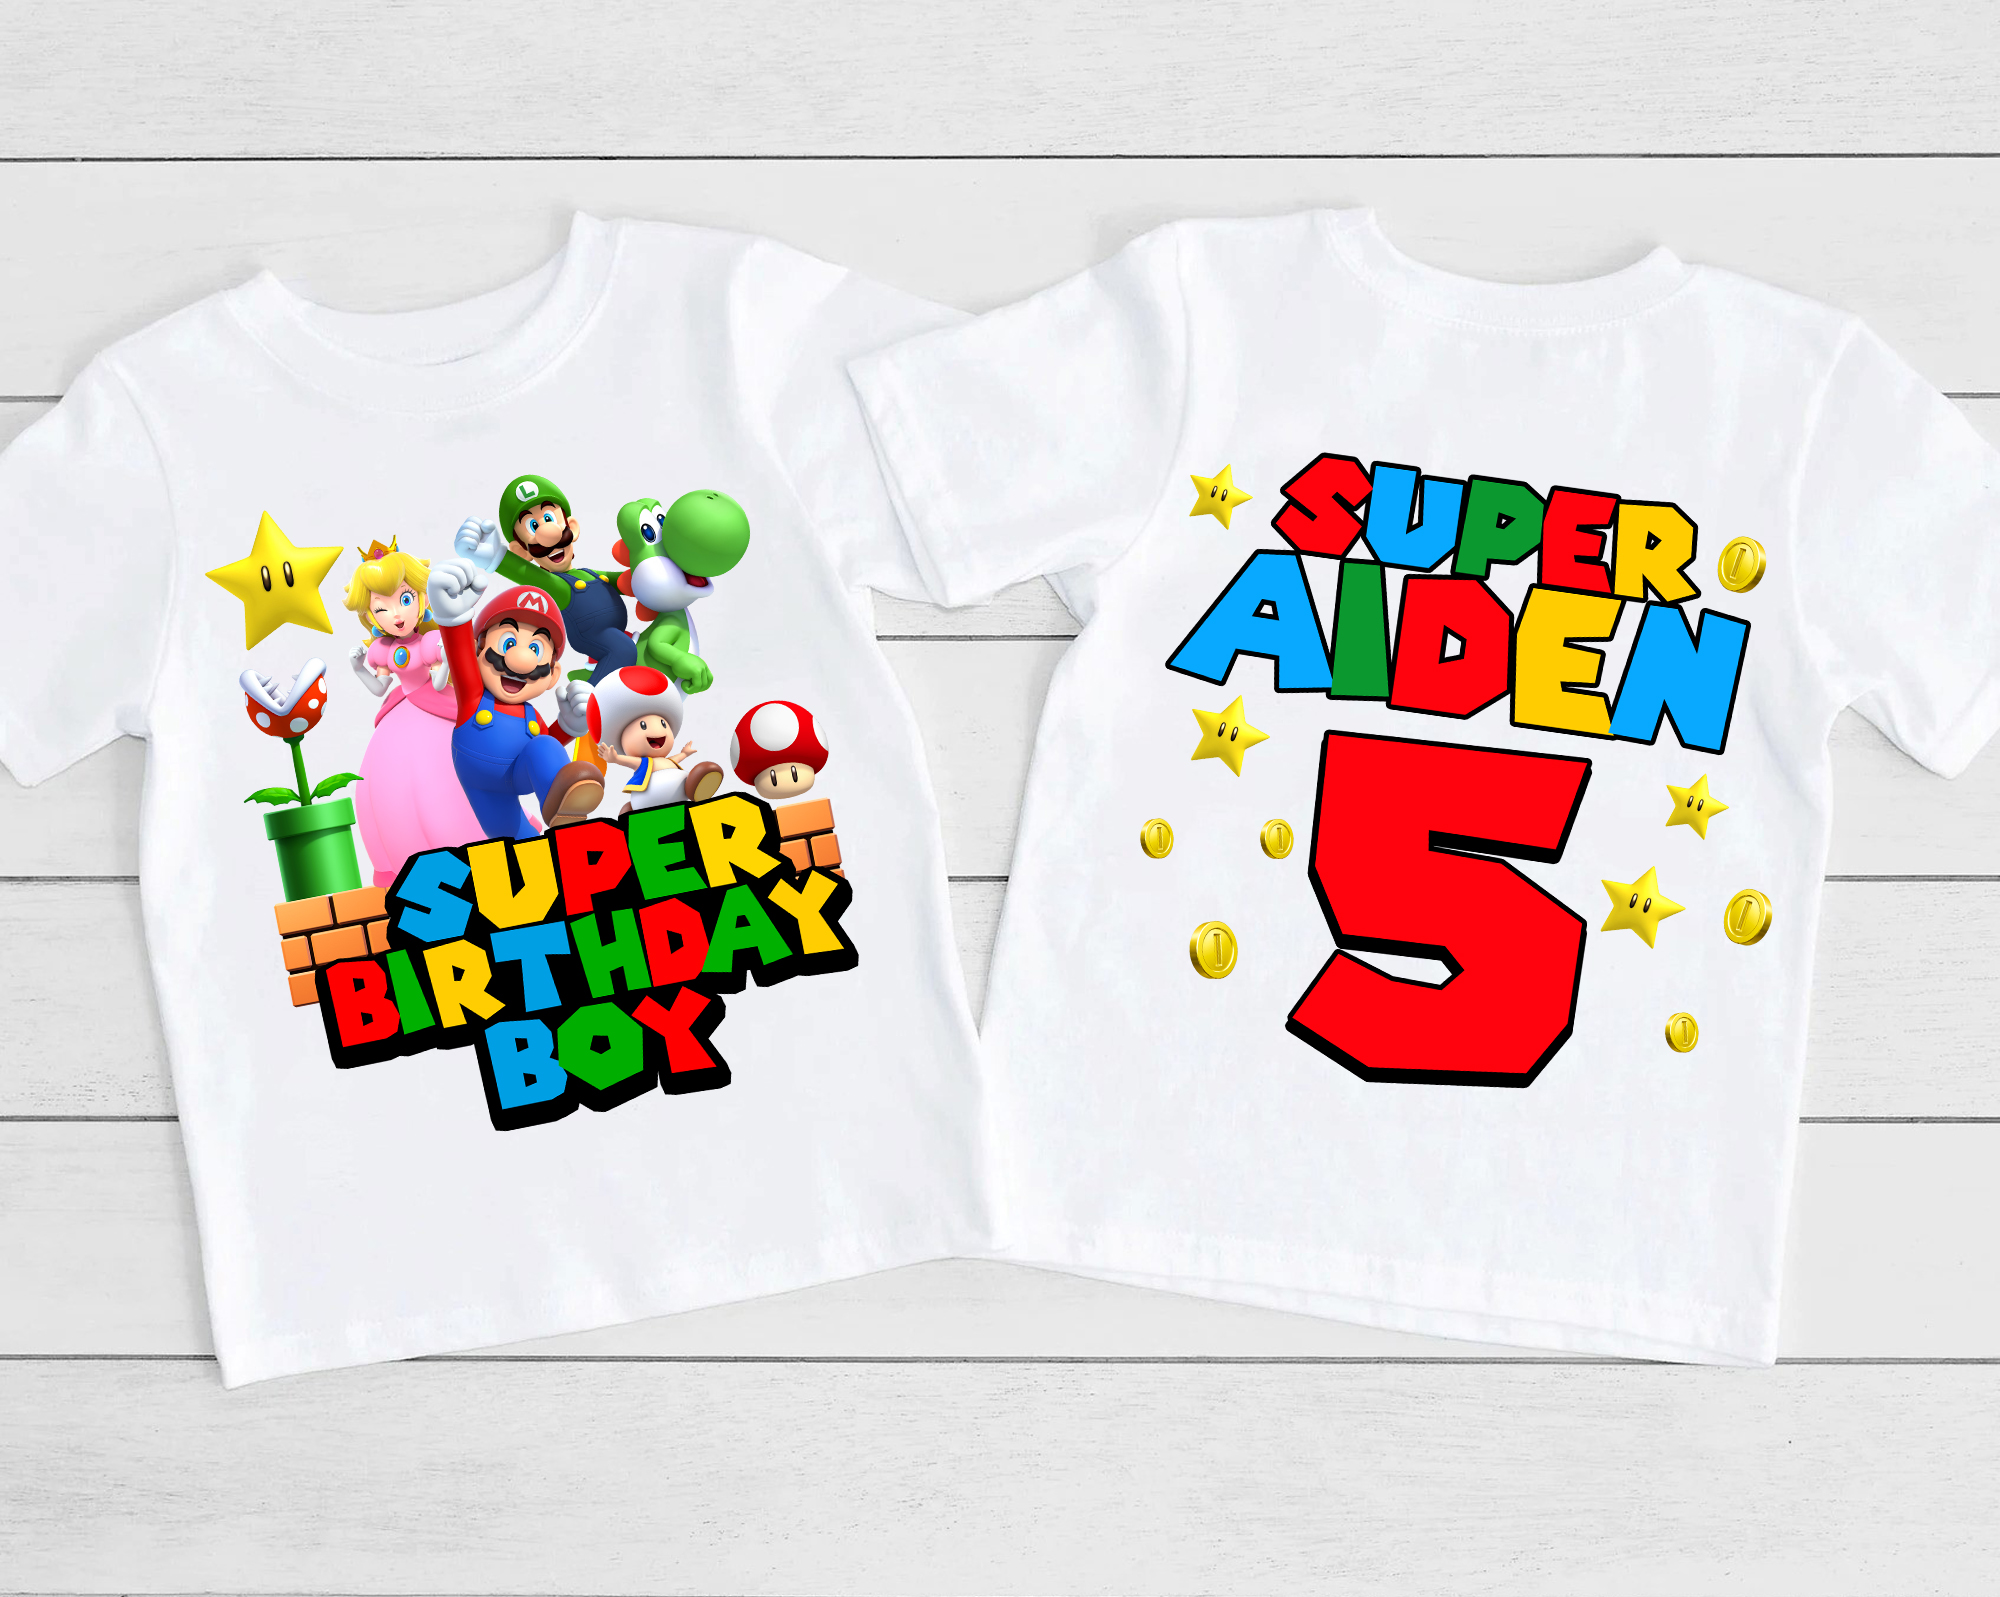 Personalized Super Mario Birthday Shirt, Custom Super Mario Shirt, Family Matching shirts, Mario Shirt